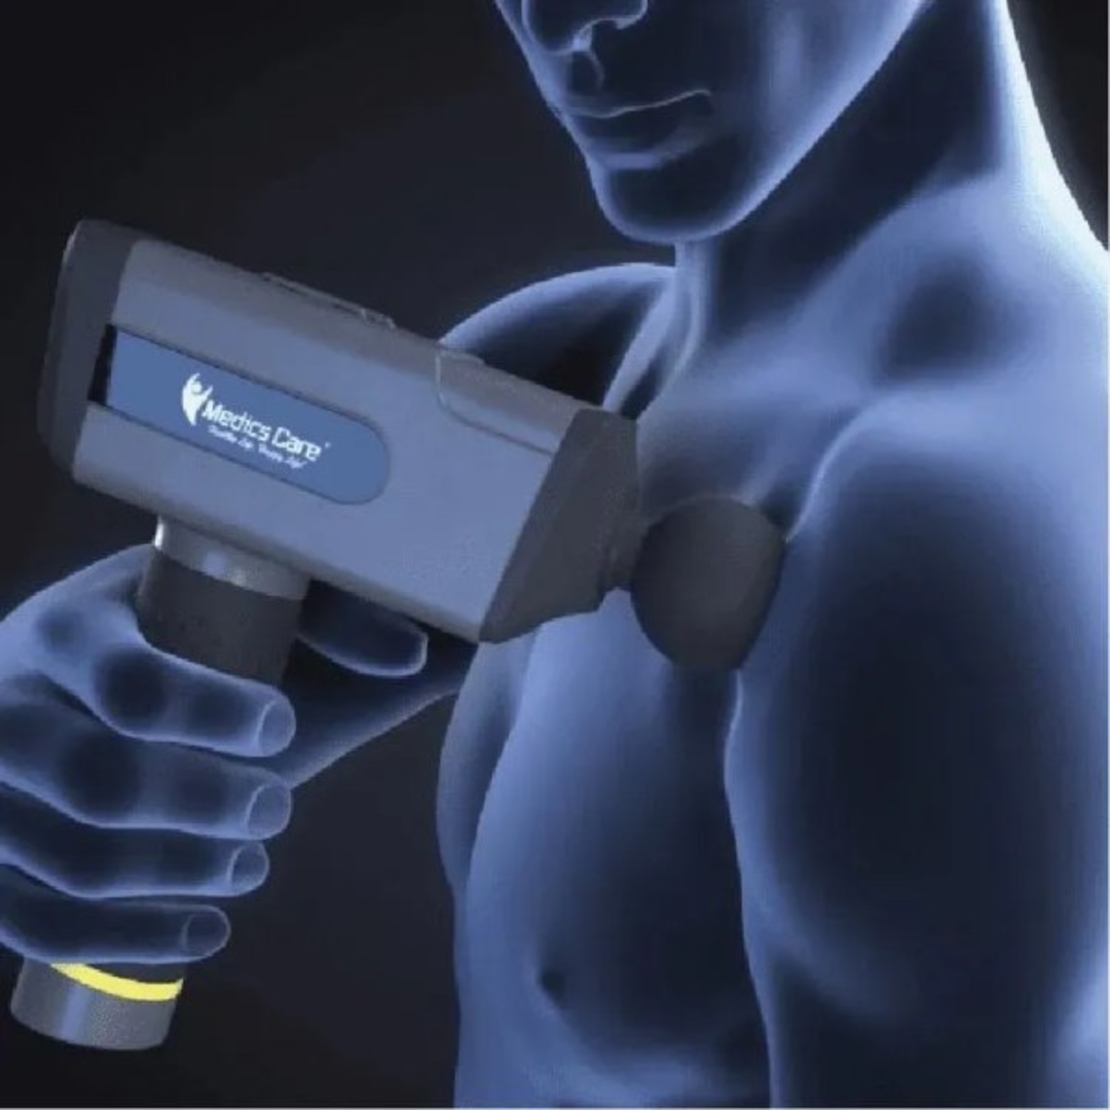 אקדח עיסוי פיזיותרפי לטיפול בכאבי שרירים ורקמות ביתי ומקצועי MC-006 1200-3300 RPM מבית Medics Care